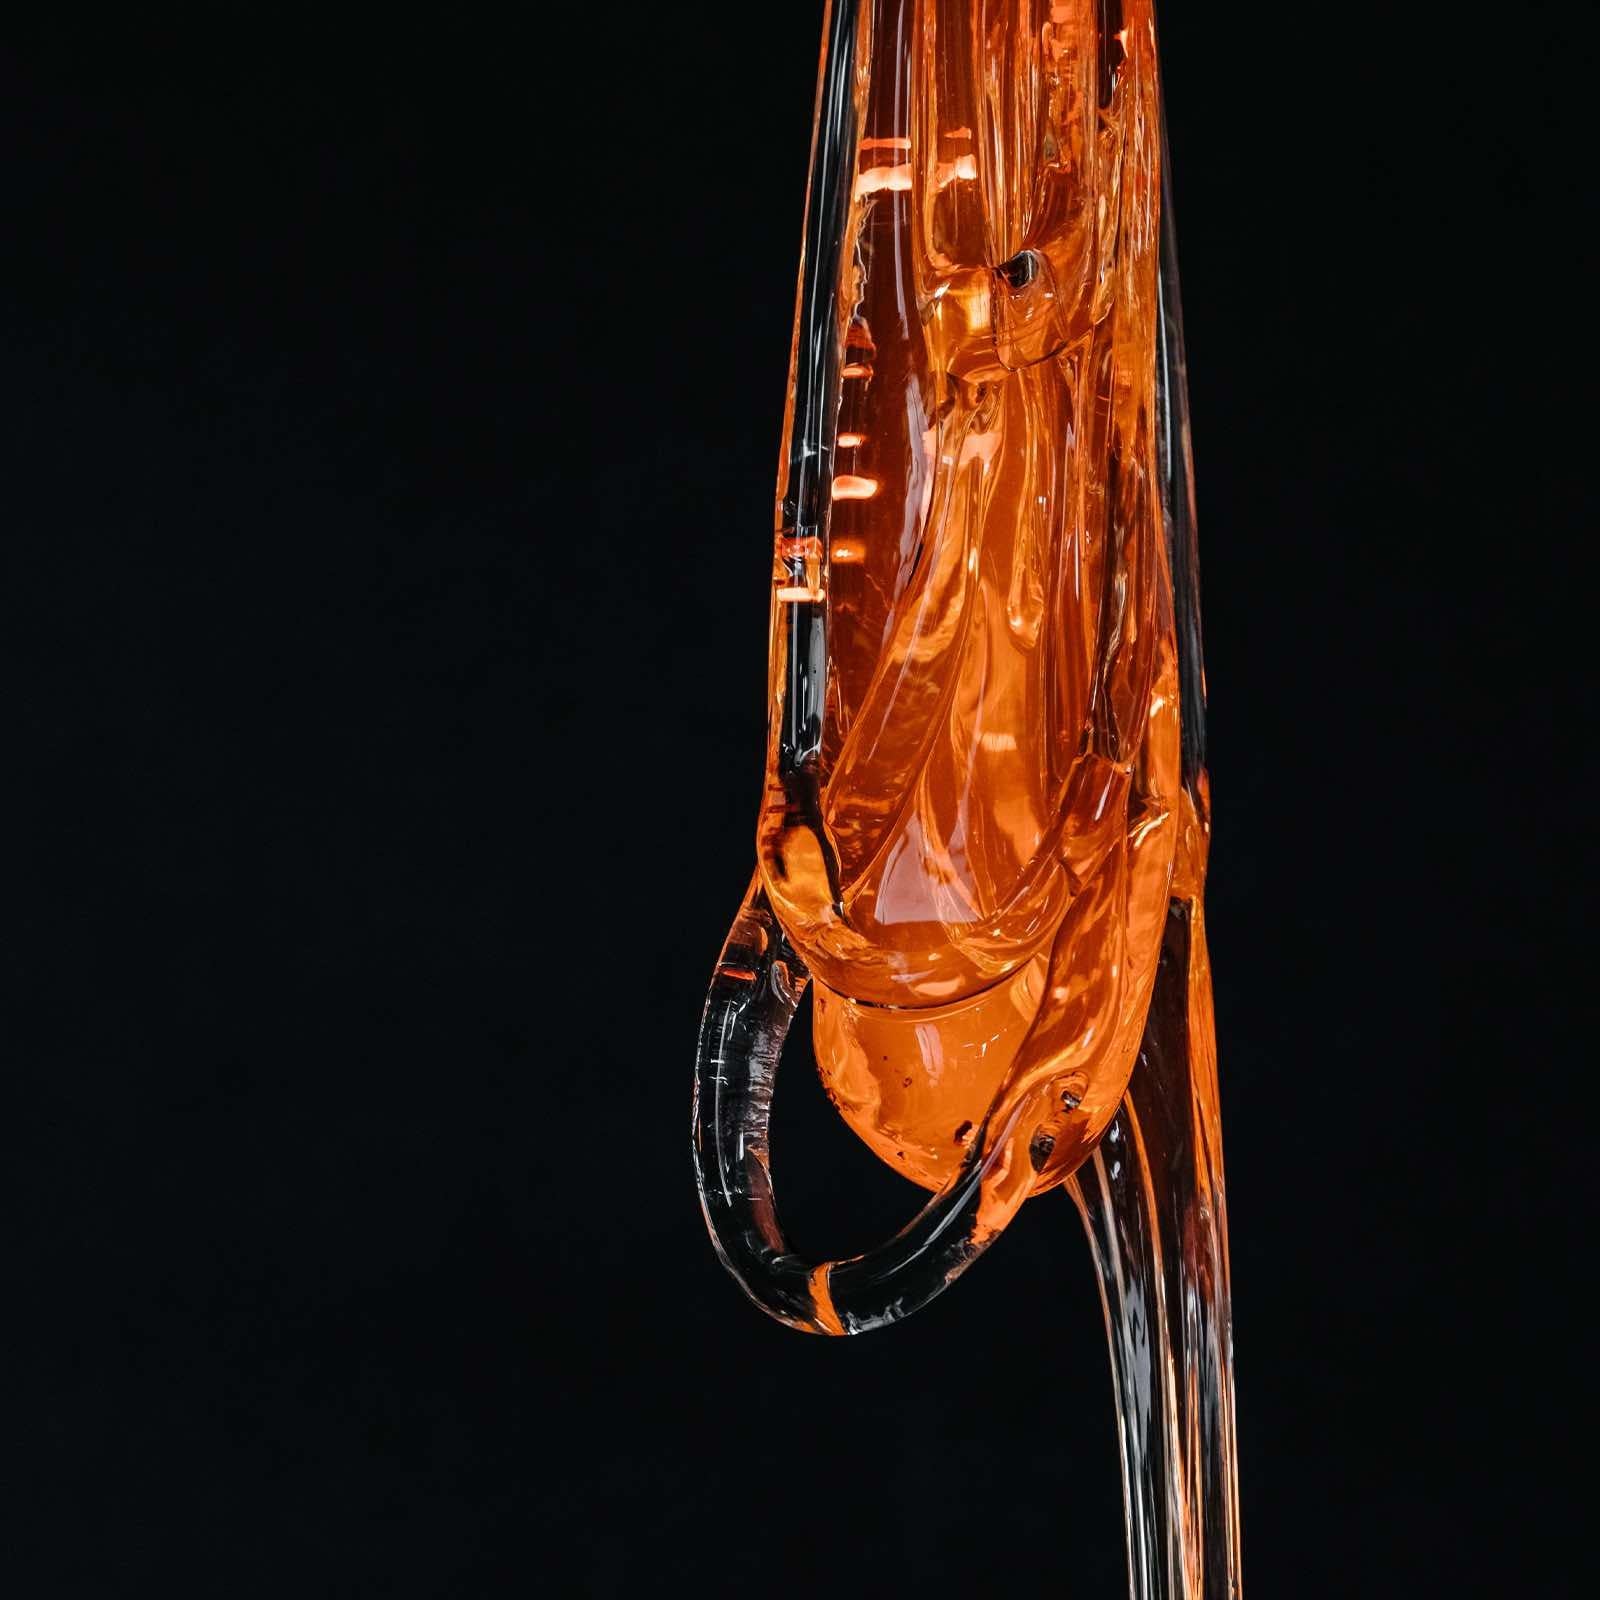 Clear / Black Glass Pendant, Tied-Up Romance by Kateřina Handlová for Bomma 3